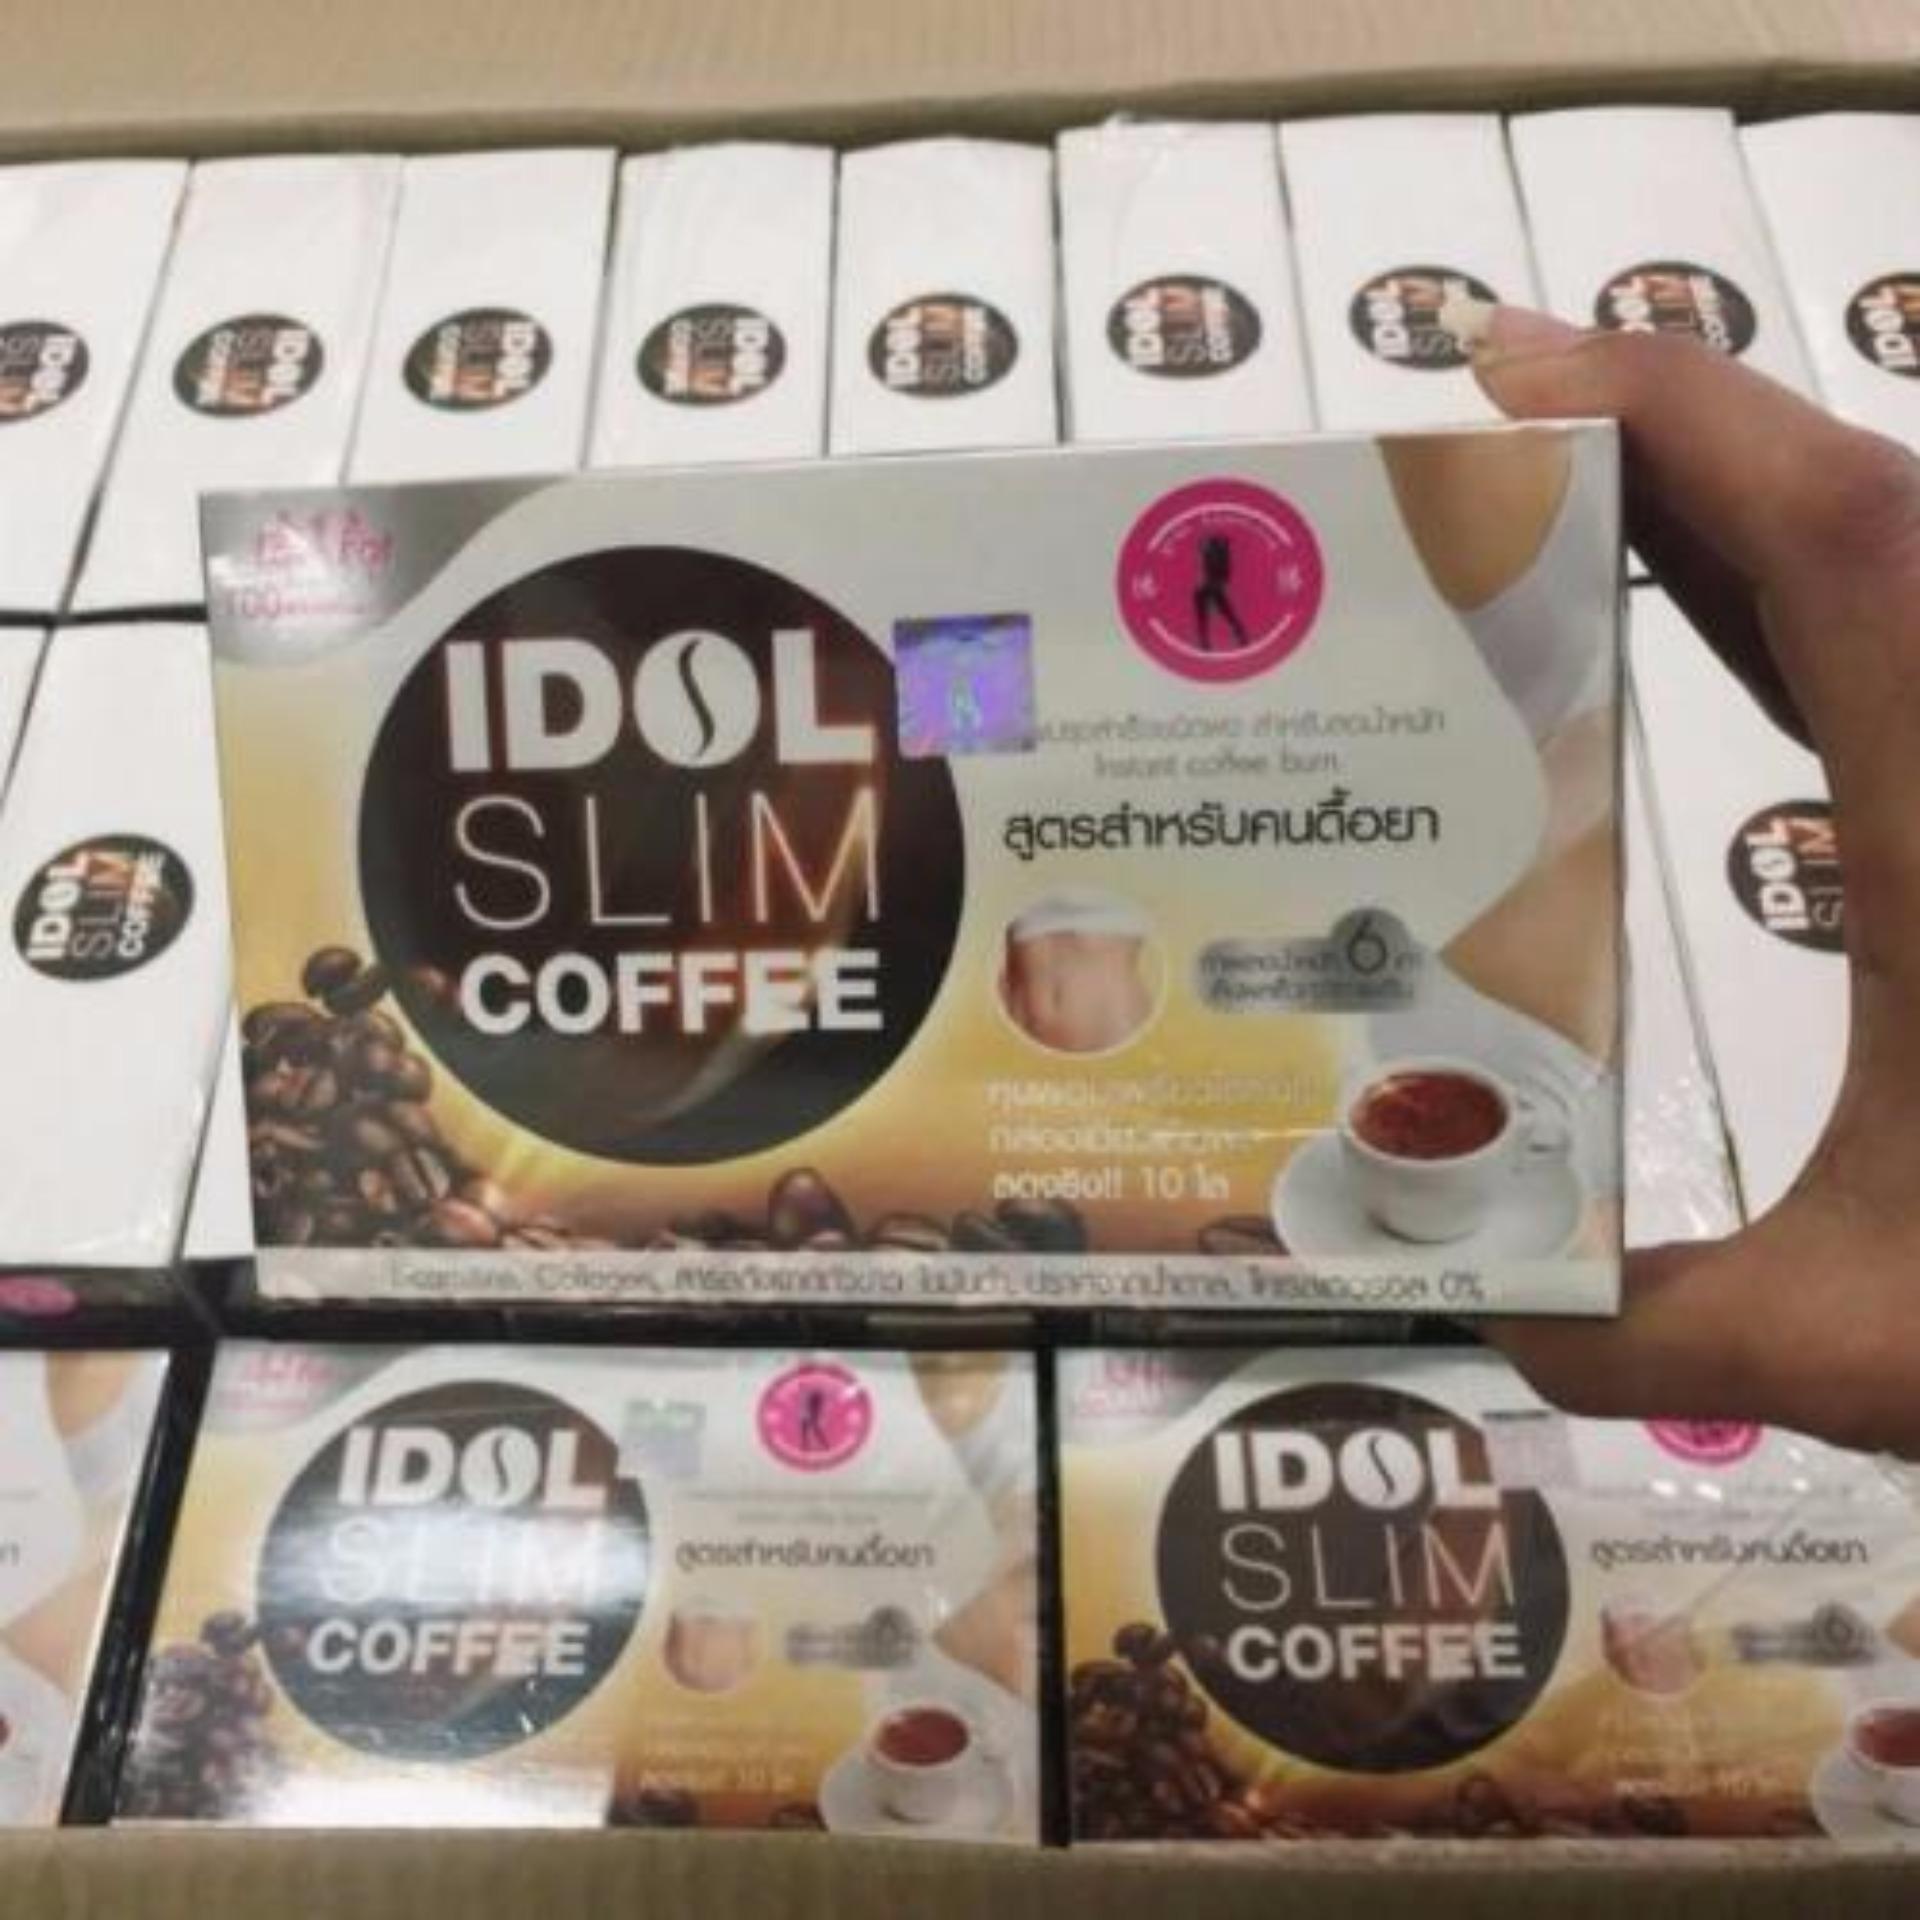 IDOL SLIM COFFEE thái lan cà phê giảm cân hiệu quả nhập khẩu từ Thái Lan SC02